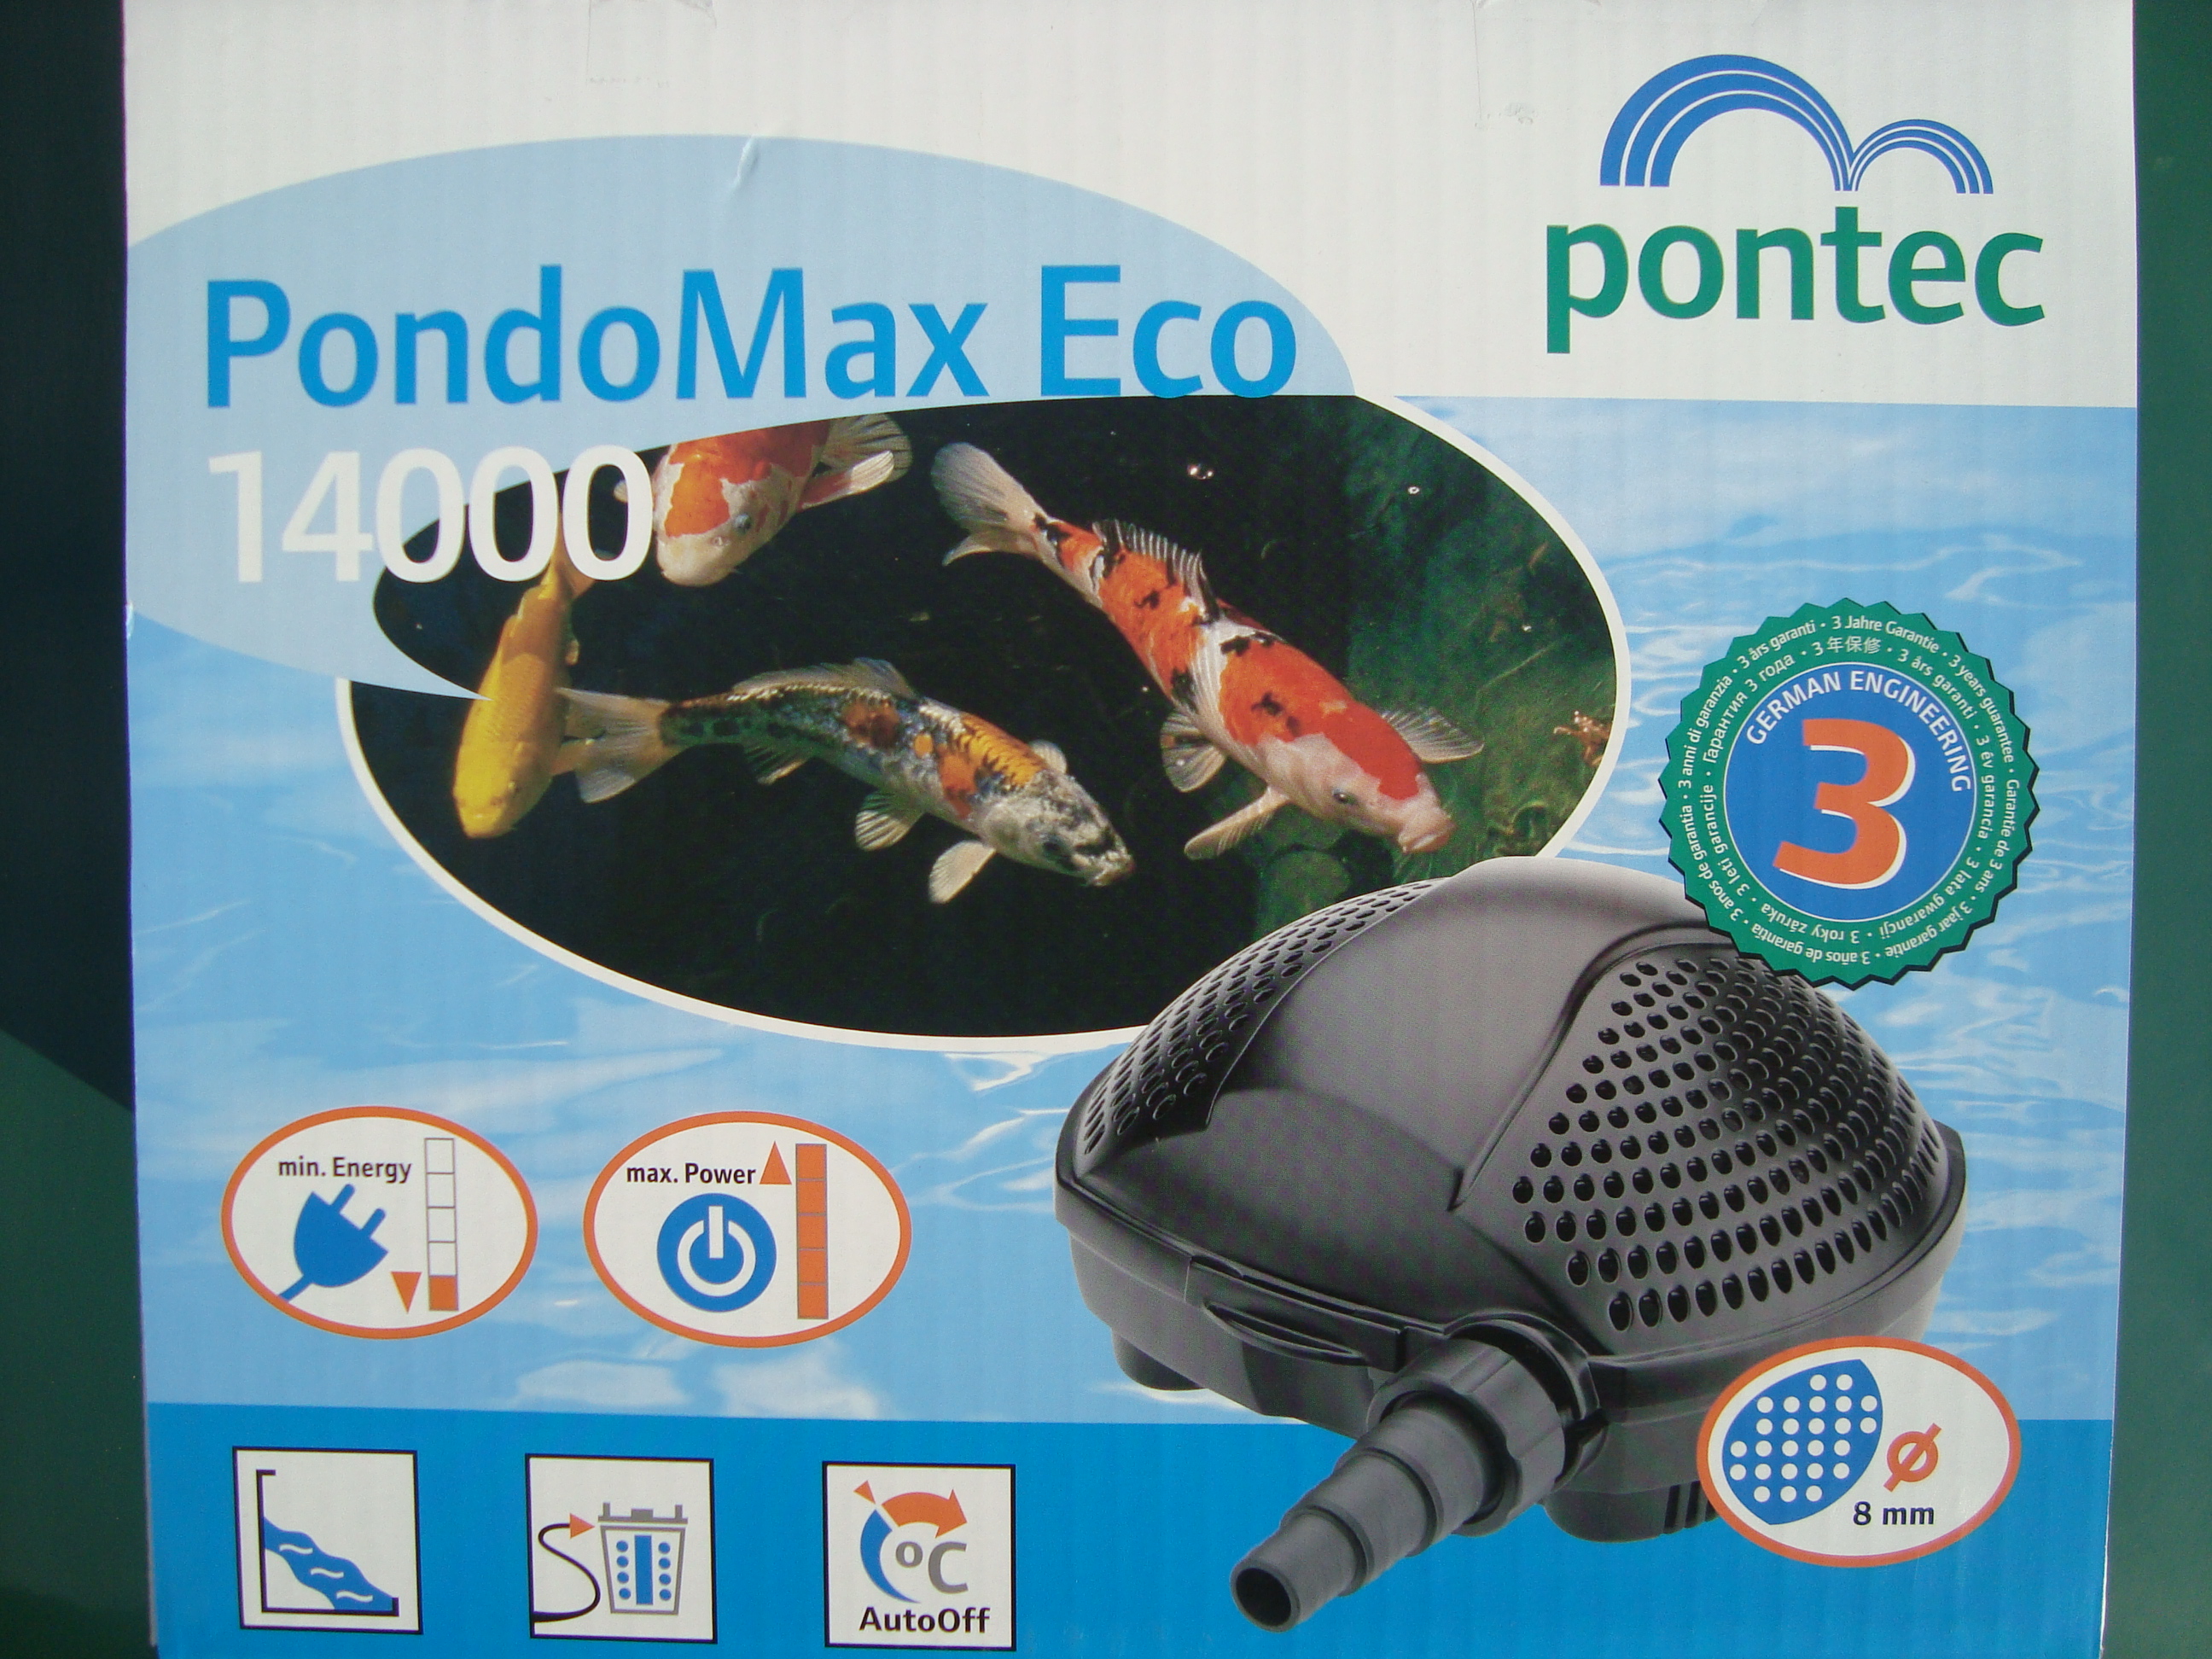 Jazierkové č. Pontec Pondomax Eco17000 cena 159€ s DPH